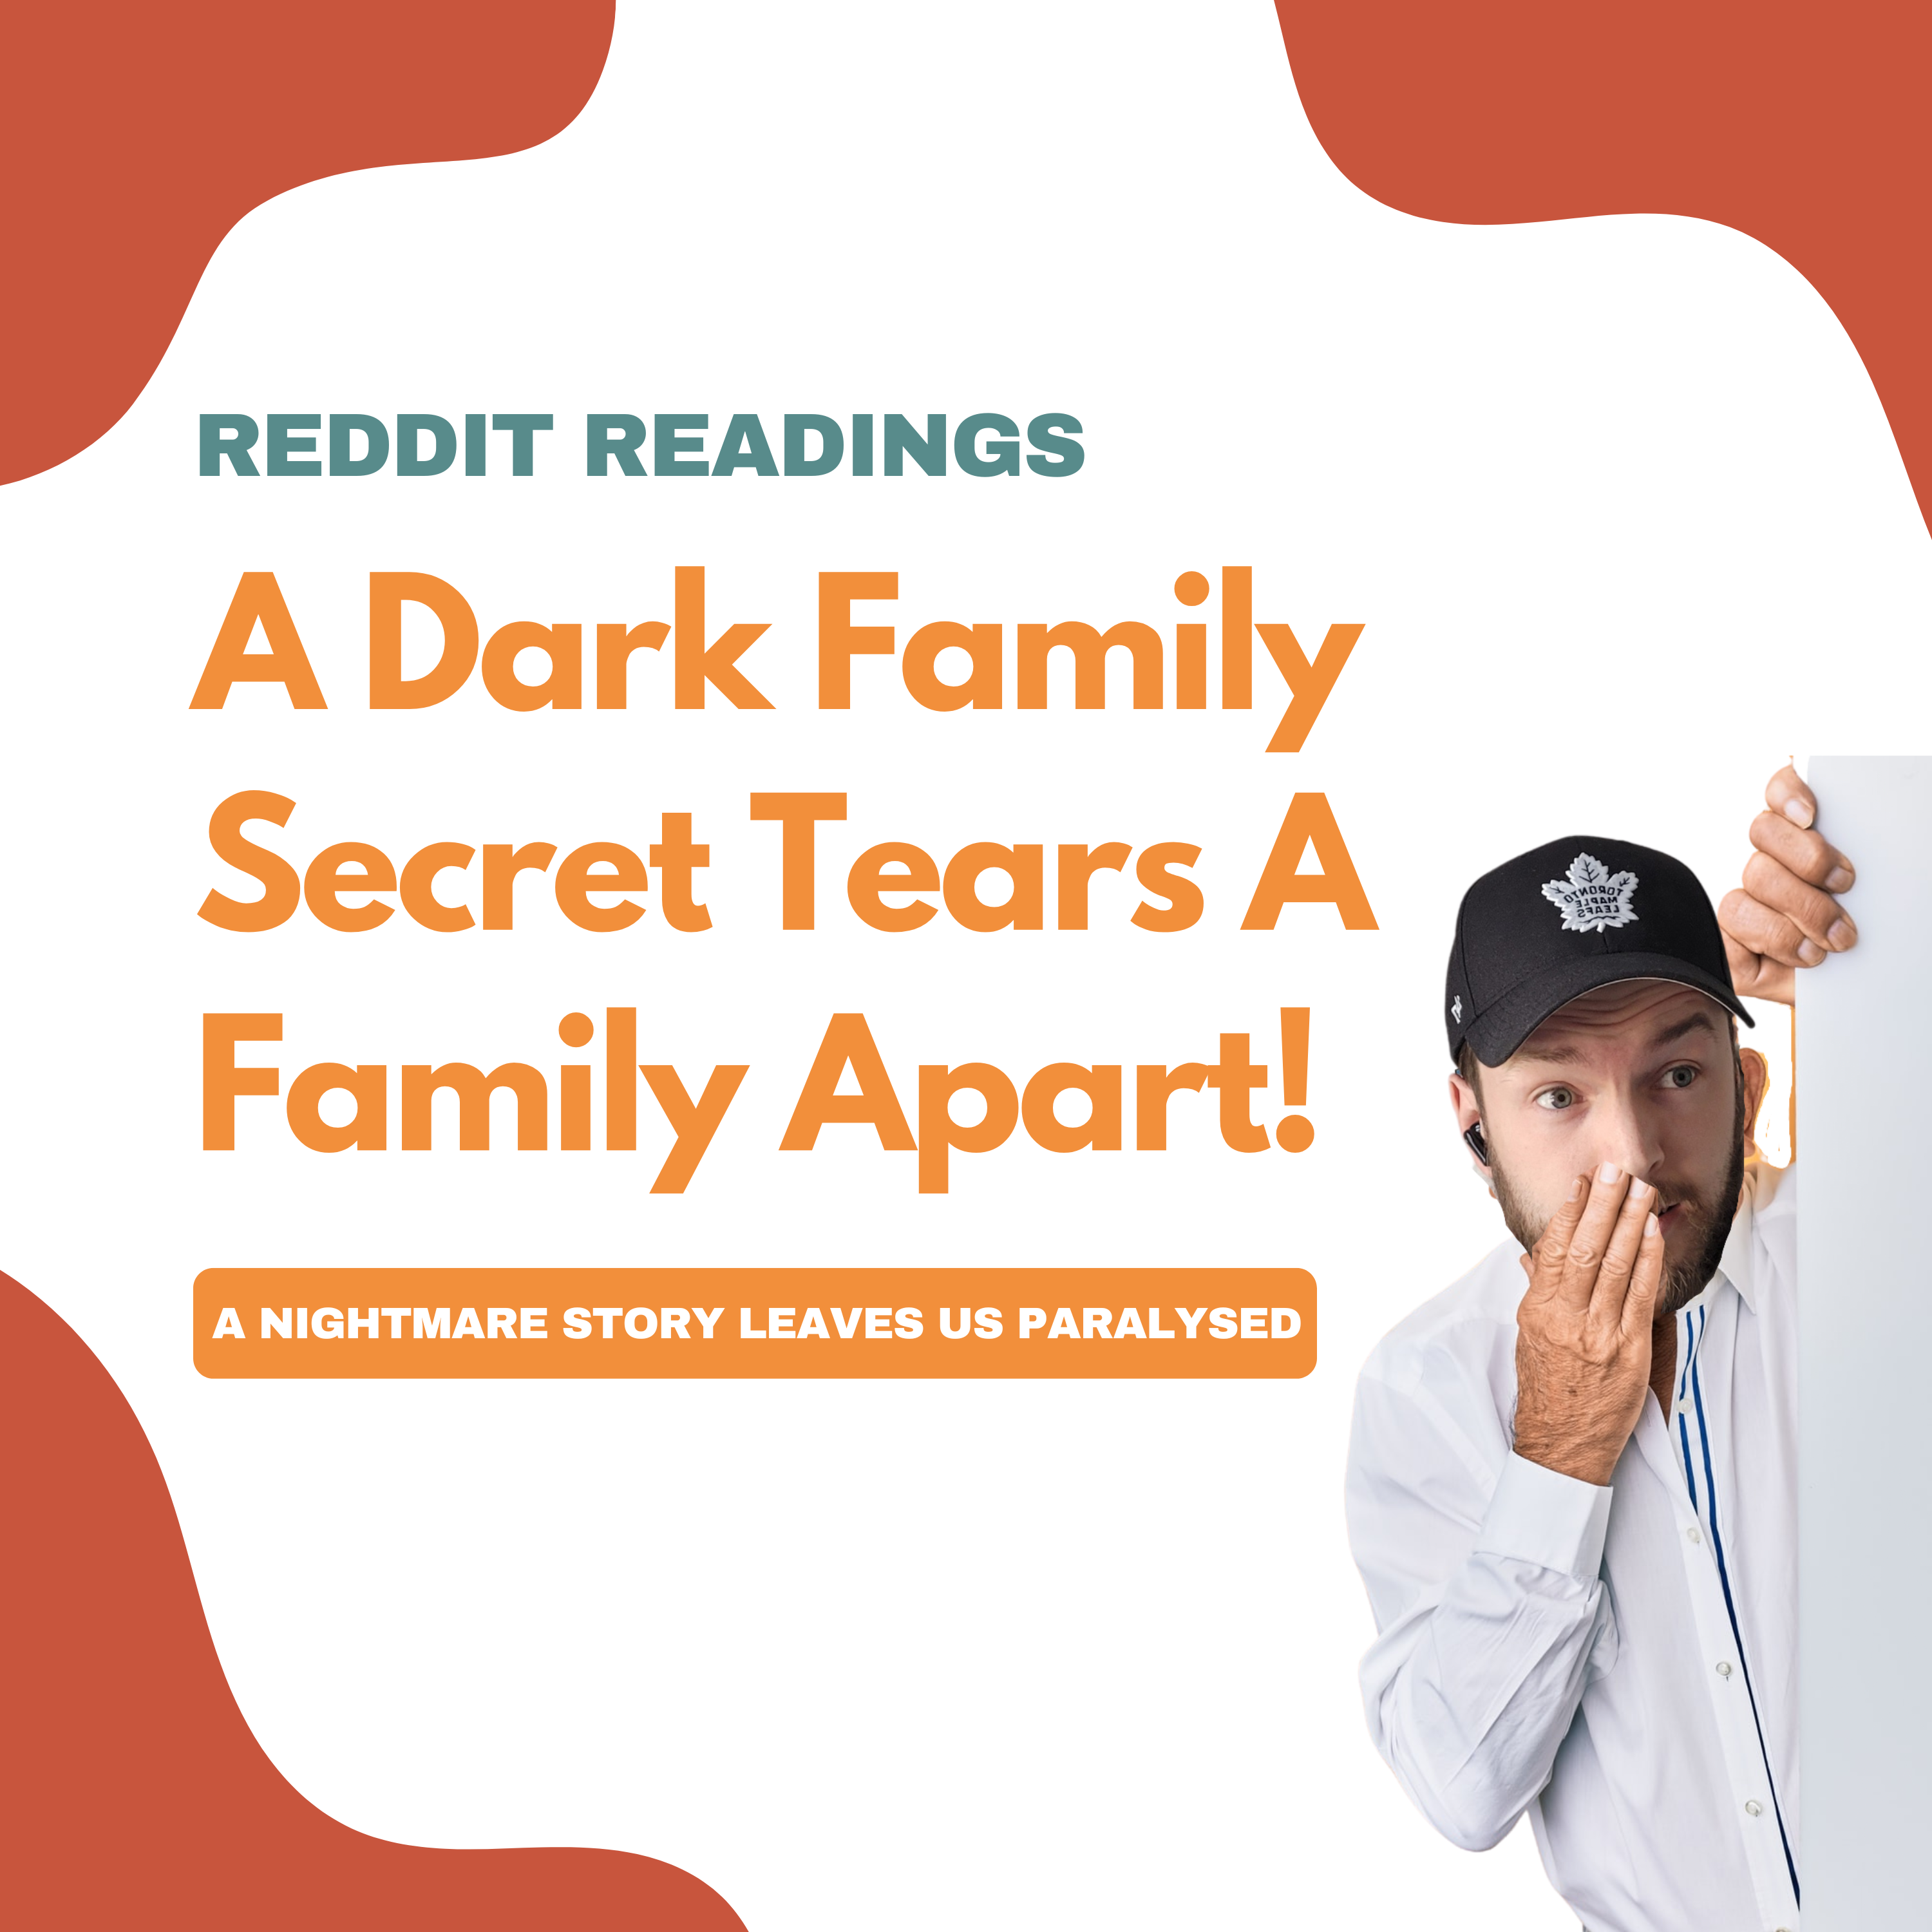 Reddit Readings | A Dark Family Secret Tears A Family Apart!